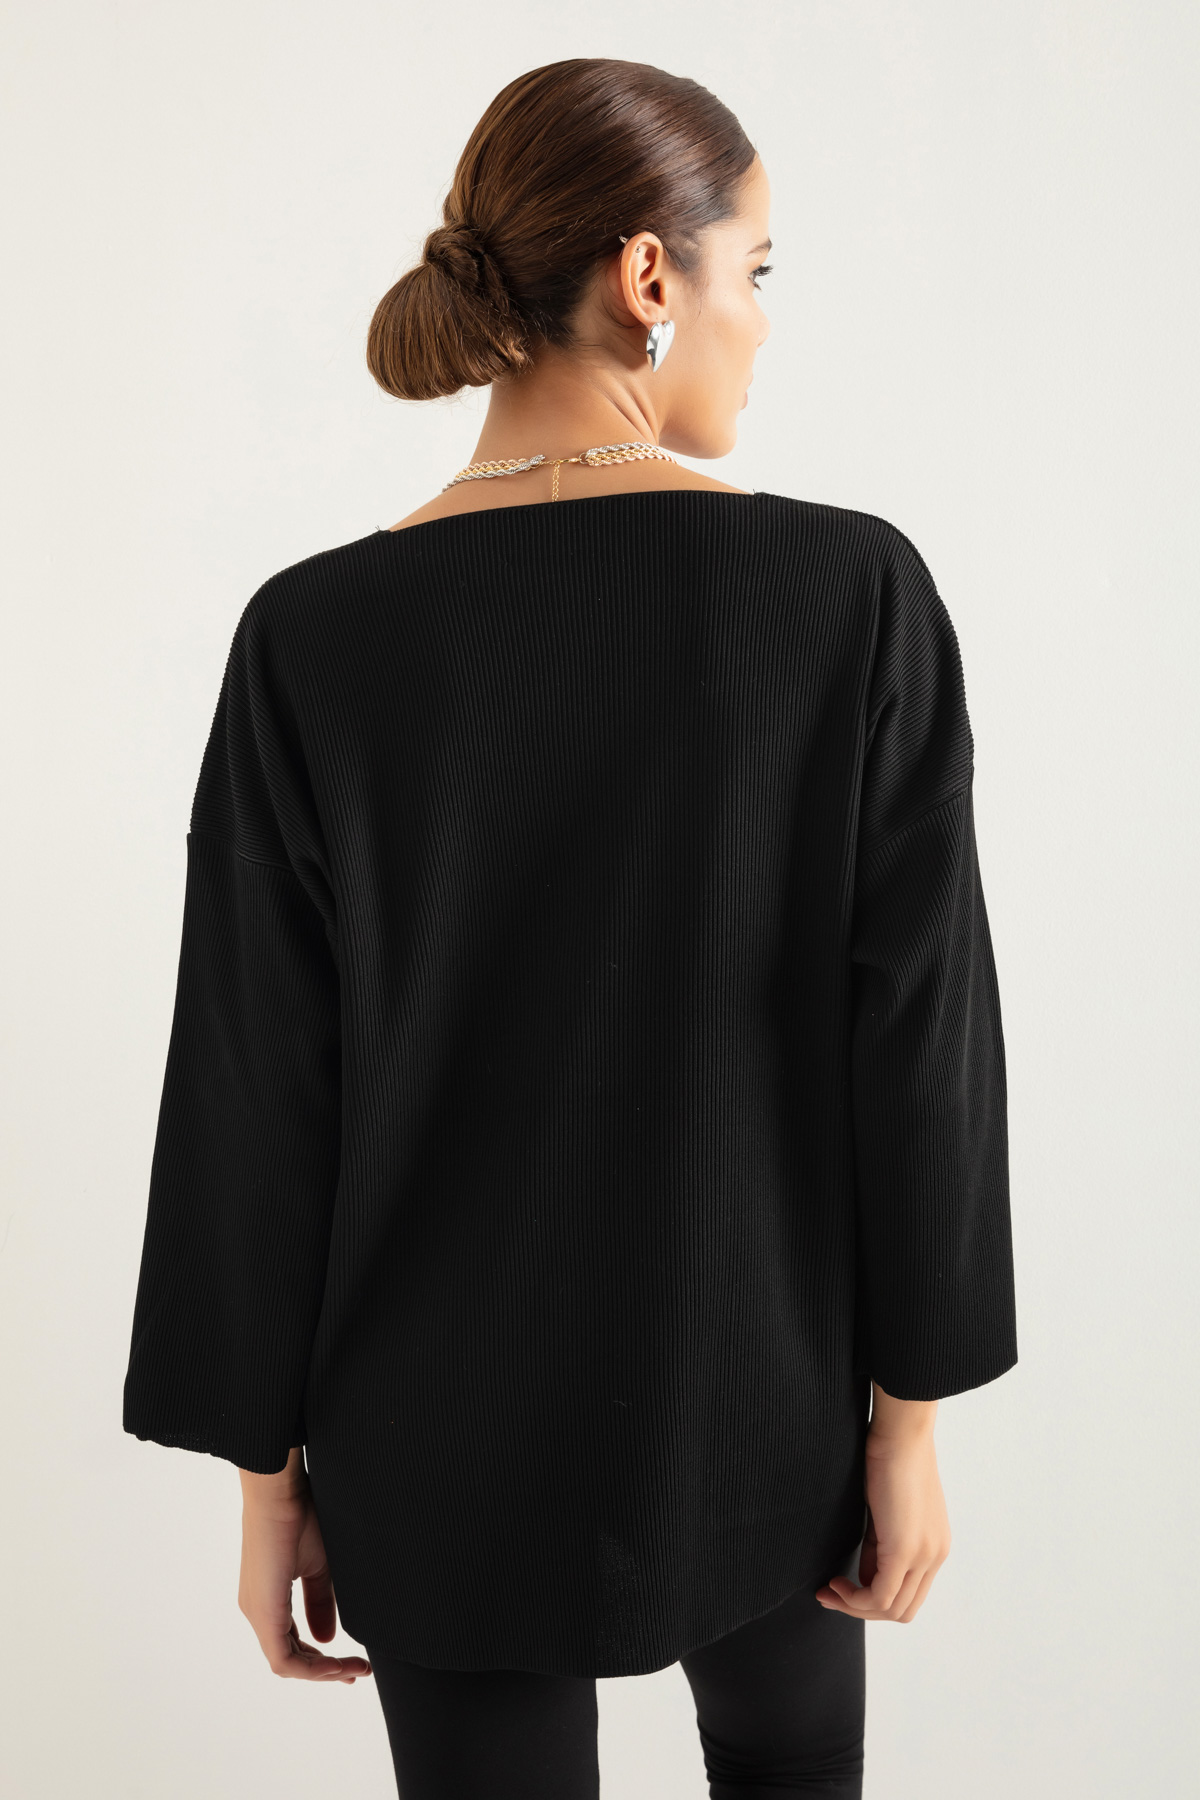 Women's Black V-Neck Sweater